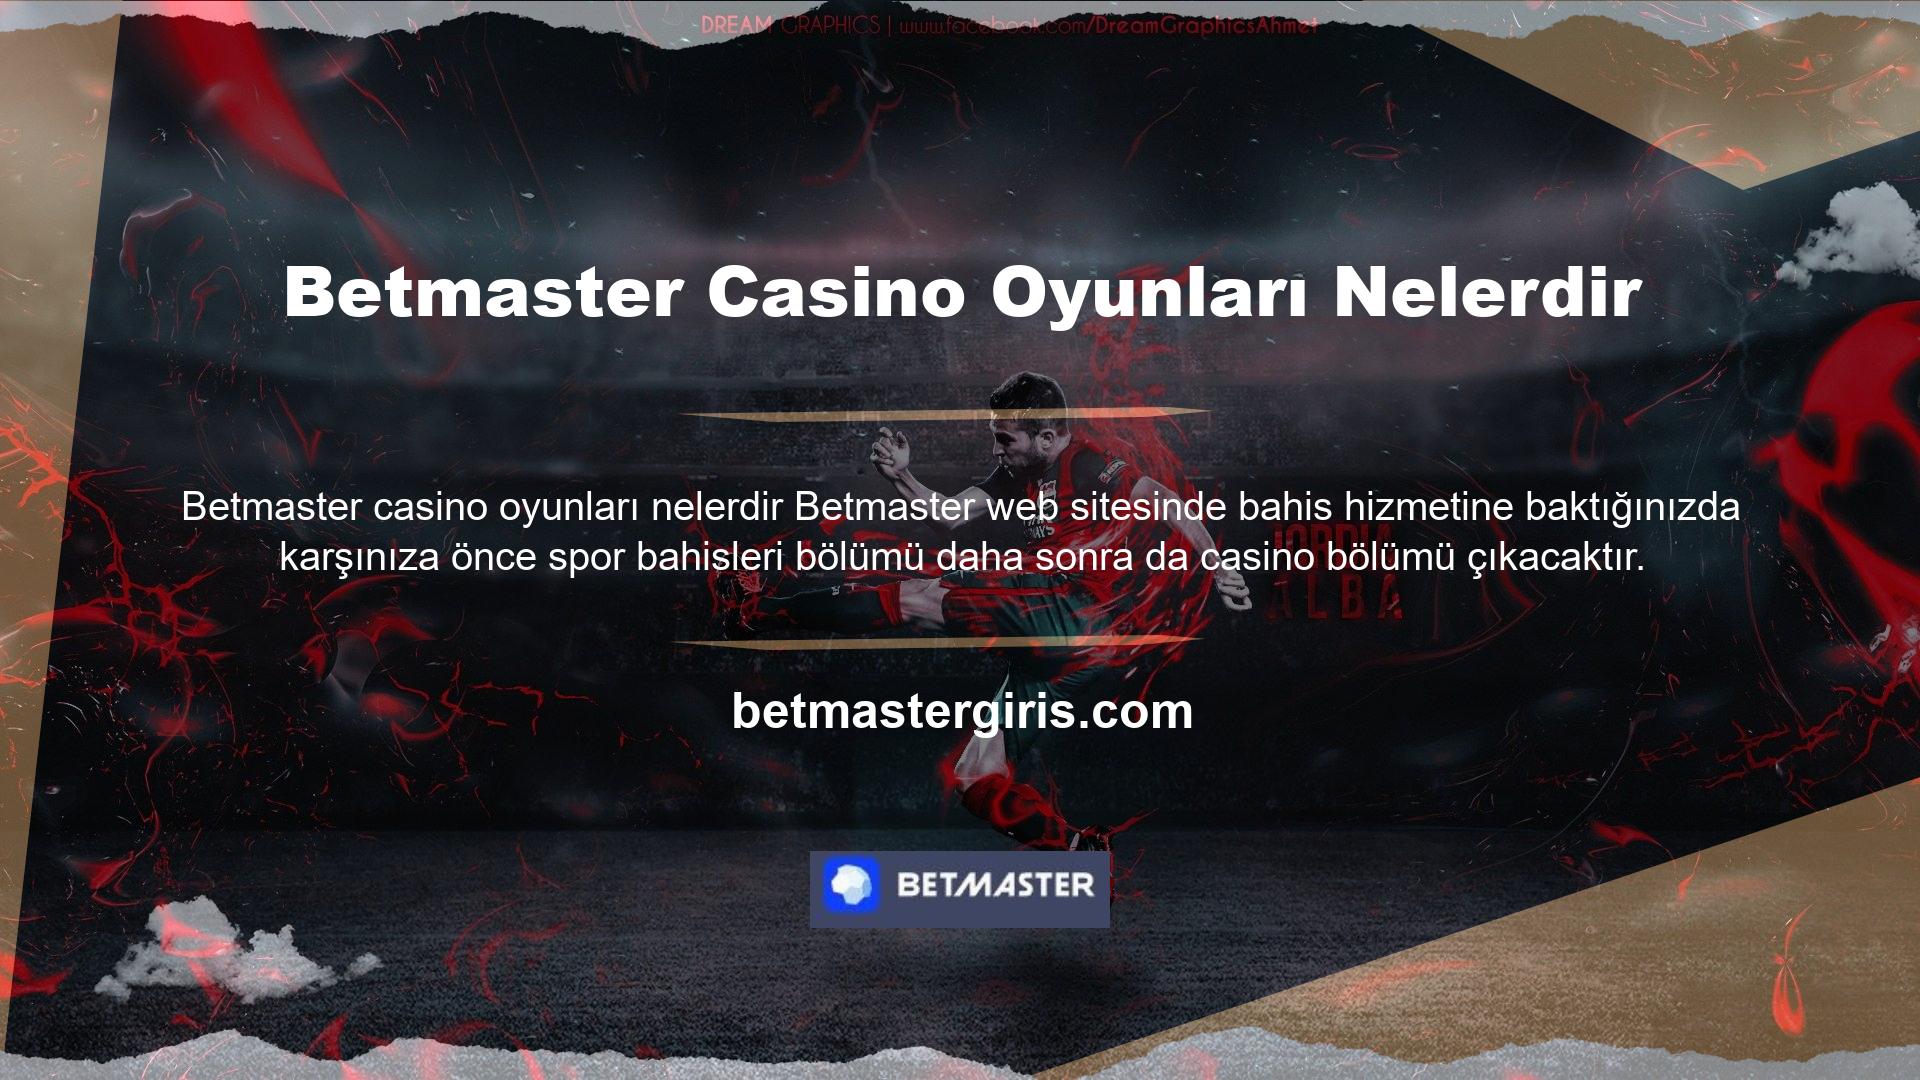 Betmaster casino oyunları nelerdir bu sitede birçok casino oyunu bulunmaktadır